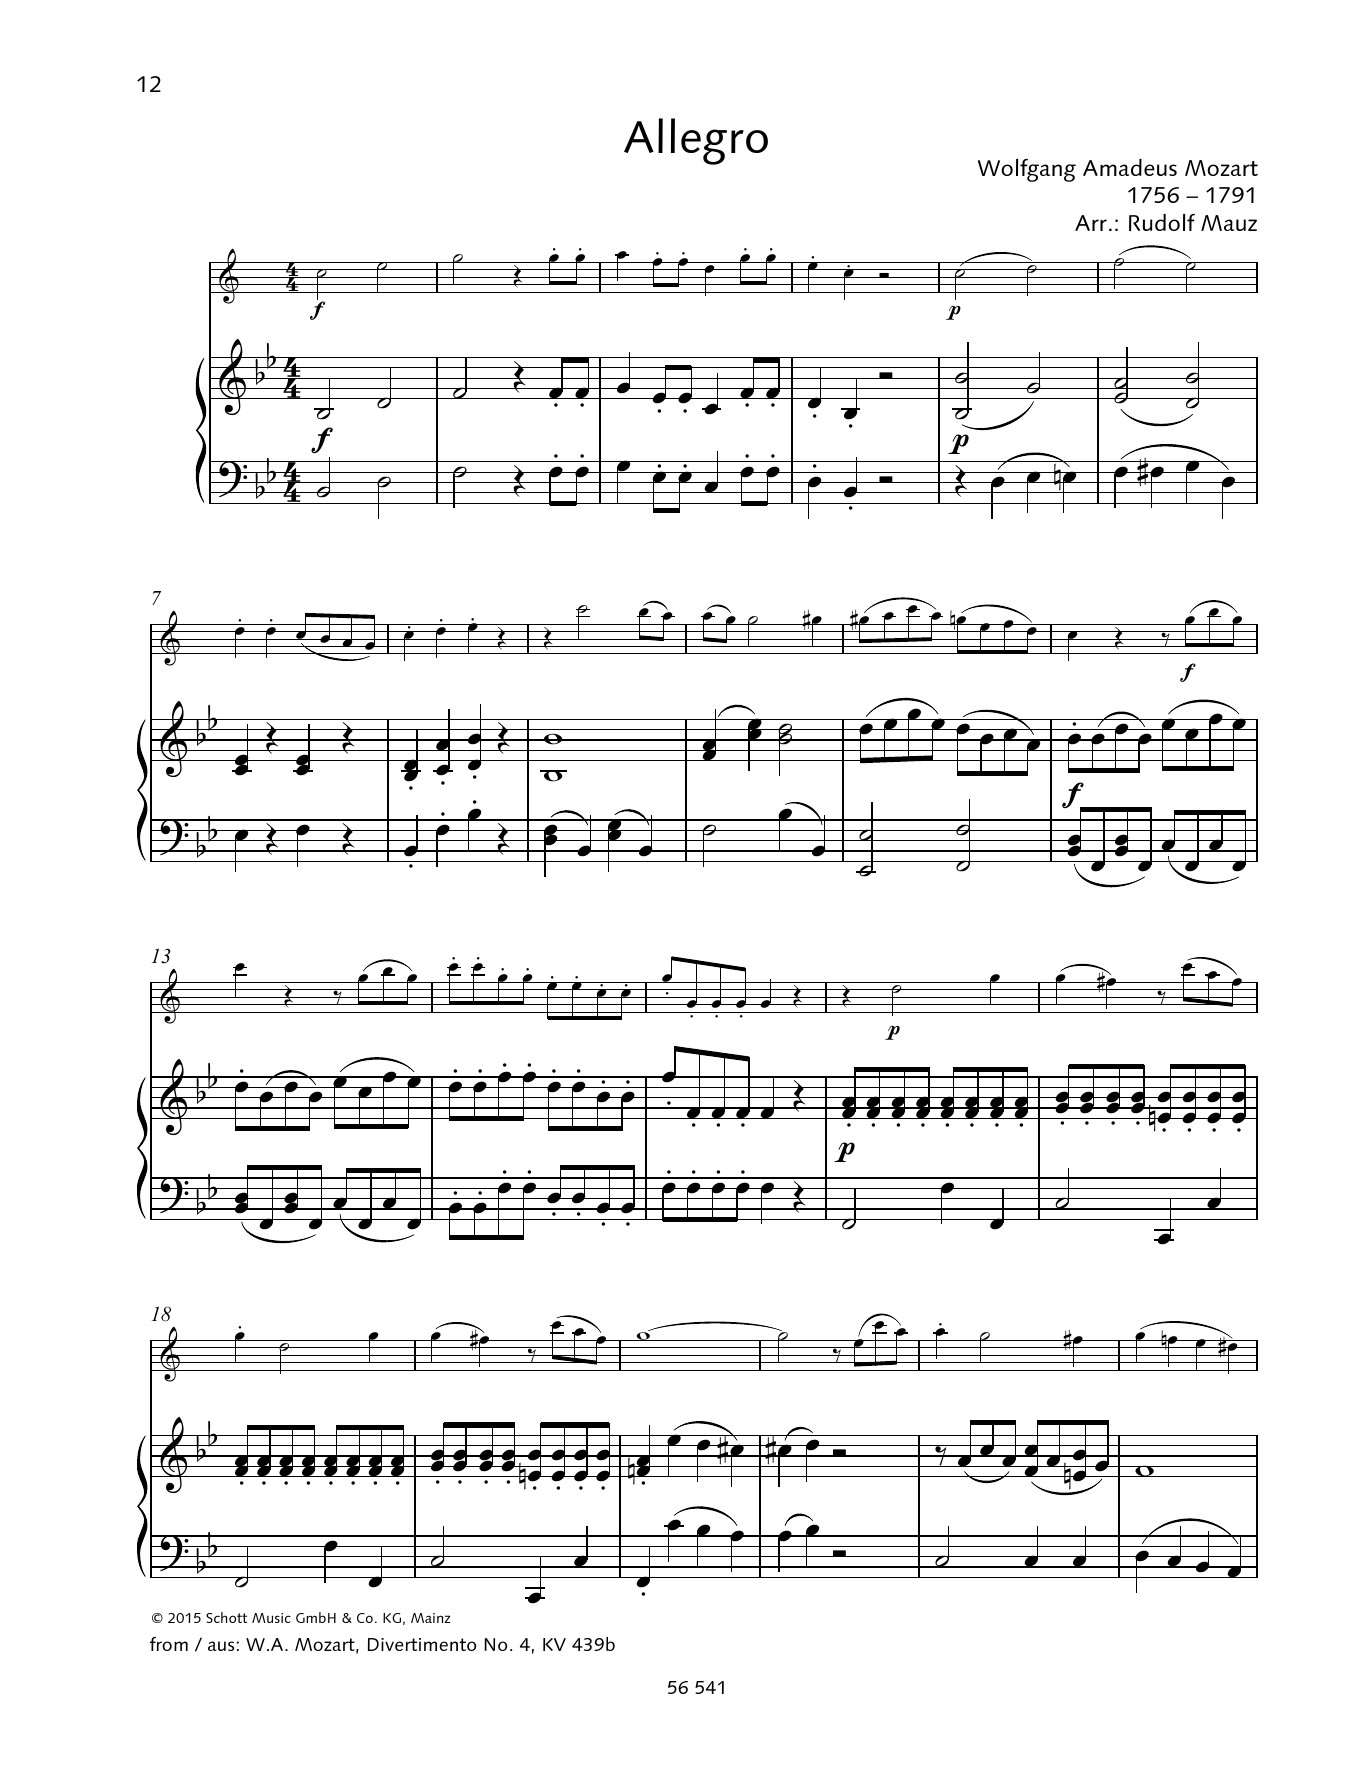 Download Wolfgang Amadeus Mozart Allegro Sheet Music